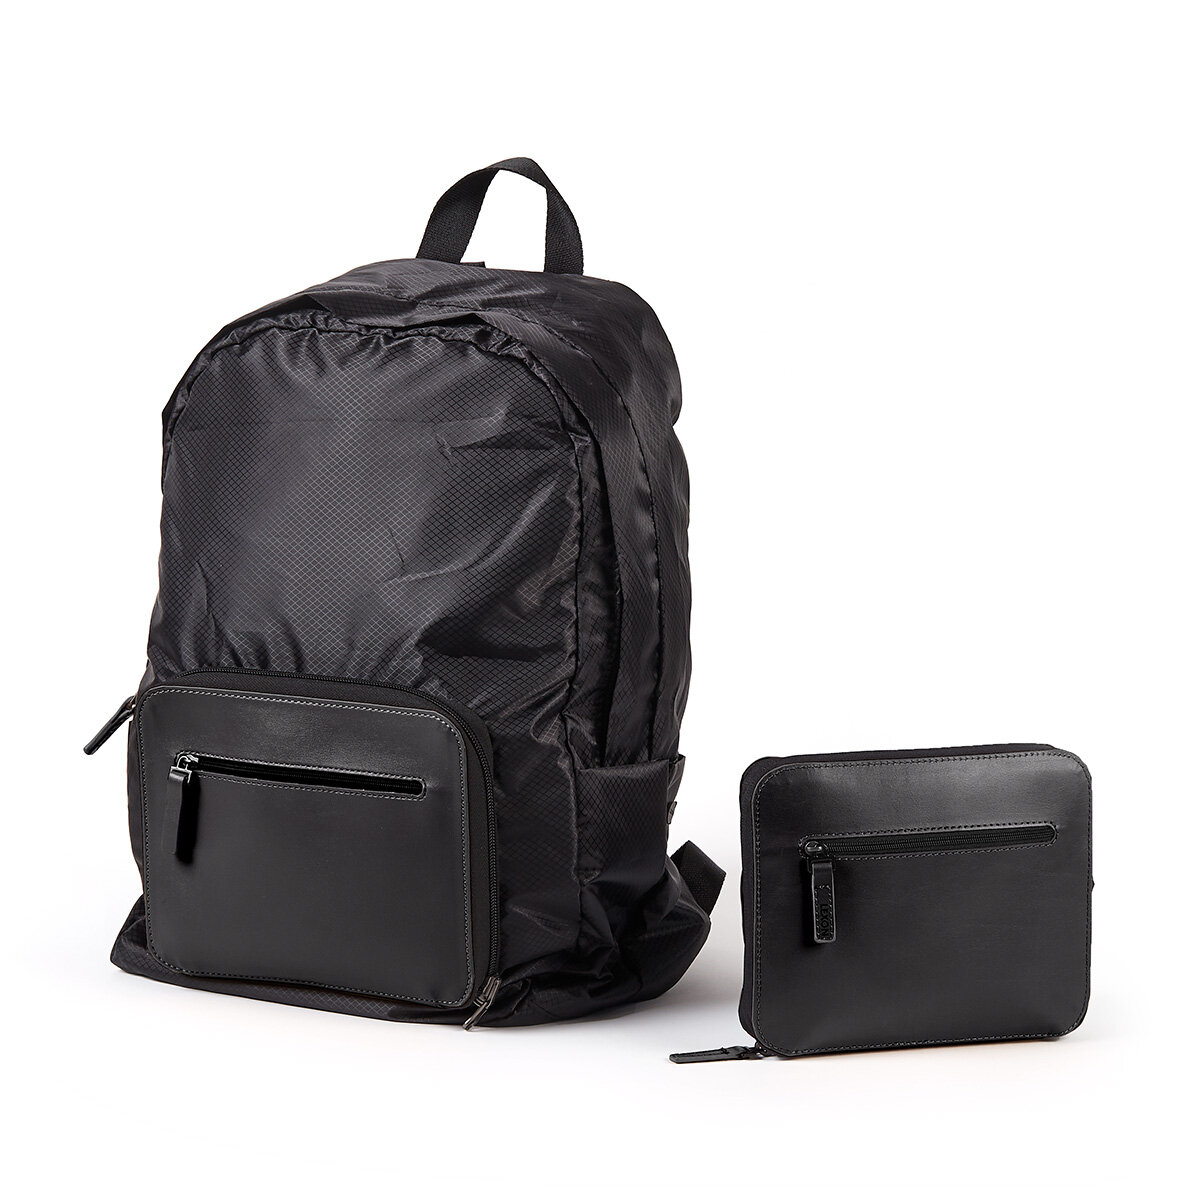 Plecak Lexon LN2311NN Packable czarny widok na plecak i saszetkę